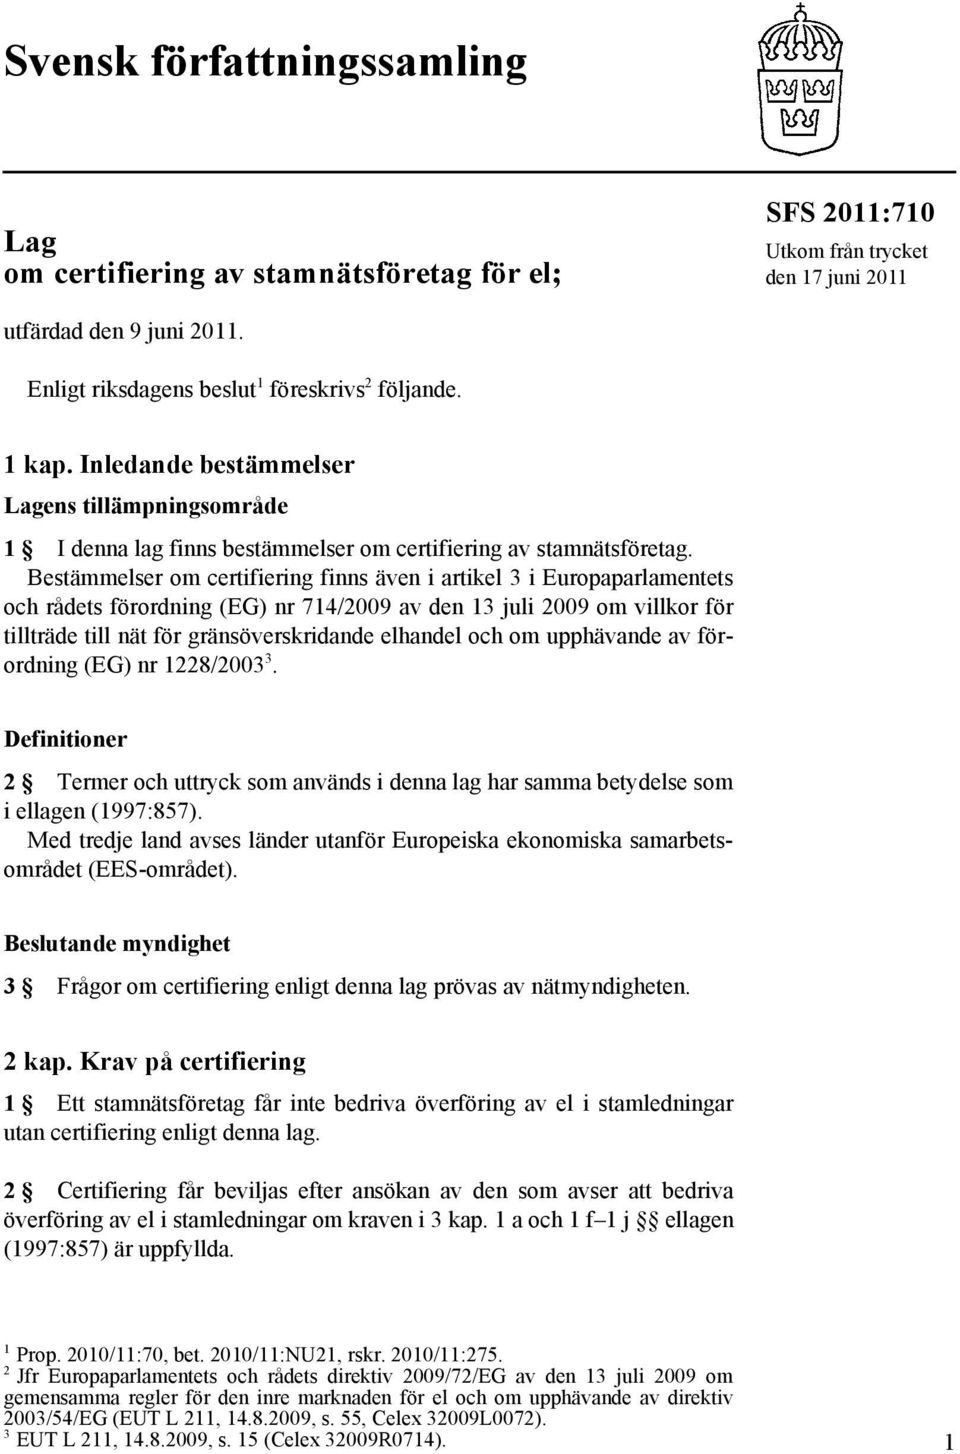 Bestämmelser om certifiering finns även i artikel 3 i Europaparlamentets och rådets förordning (EG) nr 714/2009 av den 13 juli 2009 om villkor för tillträde till nät för gränsöverskridande elhandel